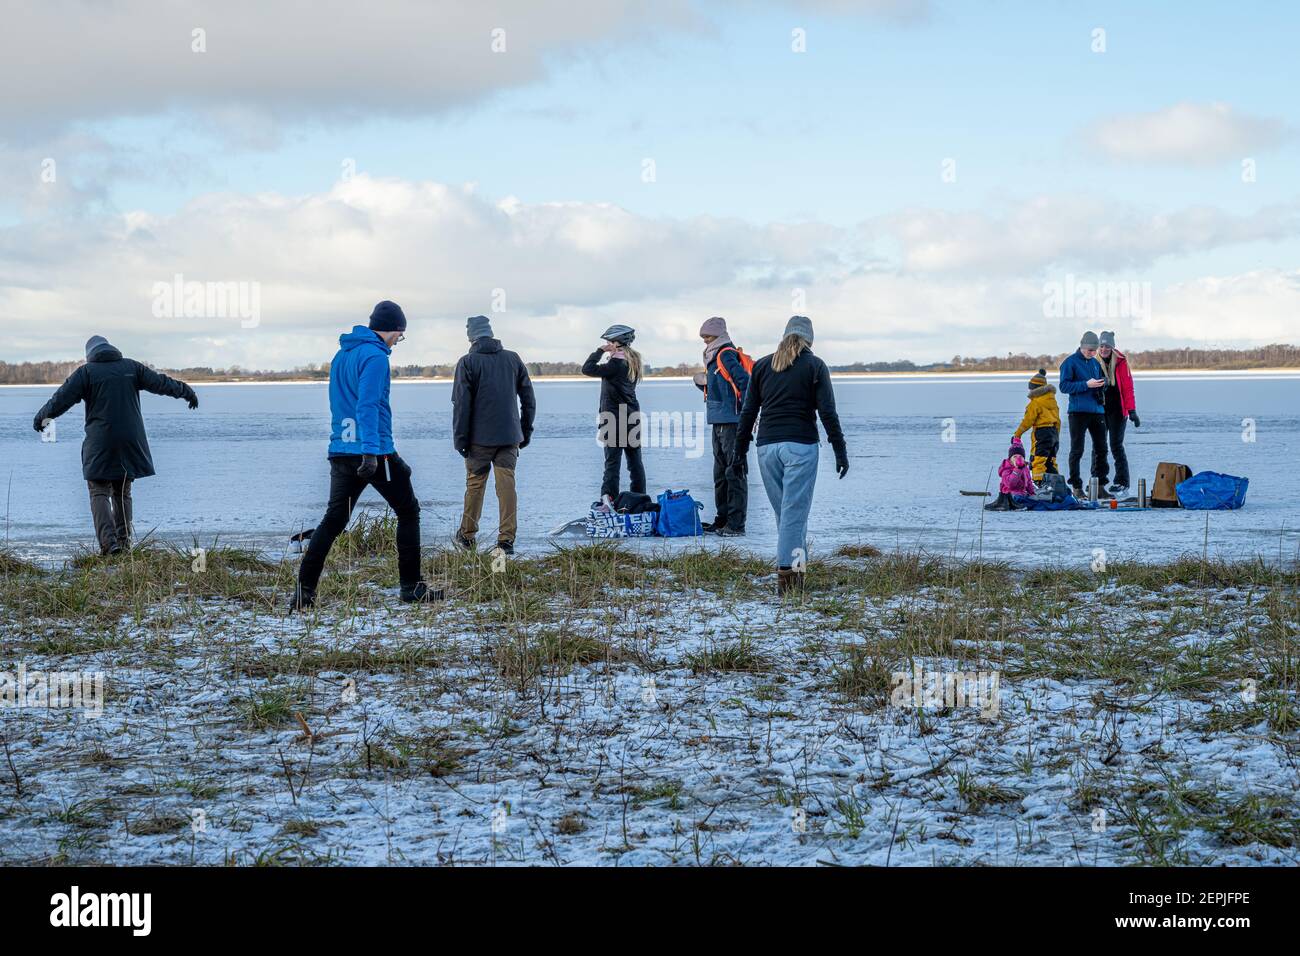 31 gennaio 2021 - Lund, Svezia: Persone che pattinano sul ghiaccio del lago Krankesjon. Quest'inverno è insolitamente freddo, molti cogliano l'opportunità di praticare attività all'aperto durante la pandemia del coronavirus Foto Stock